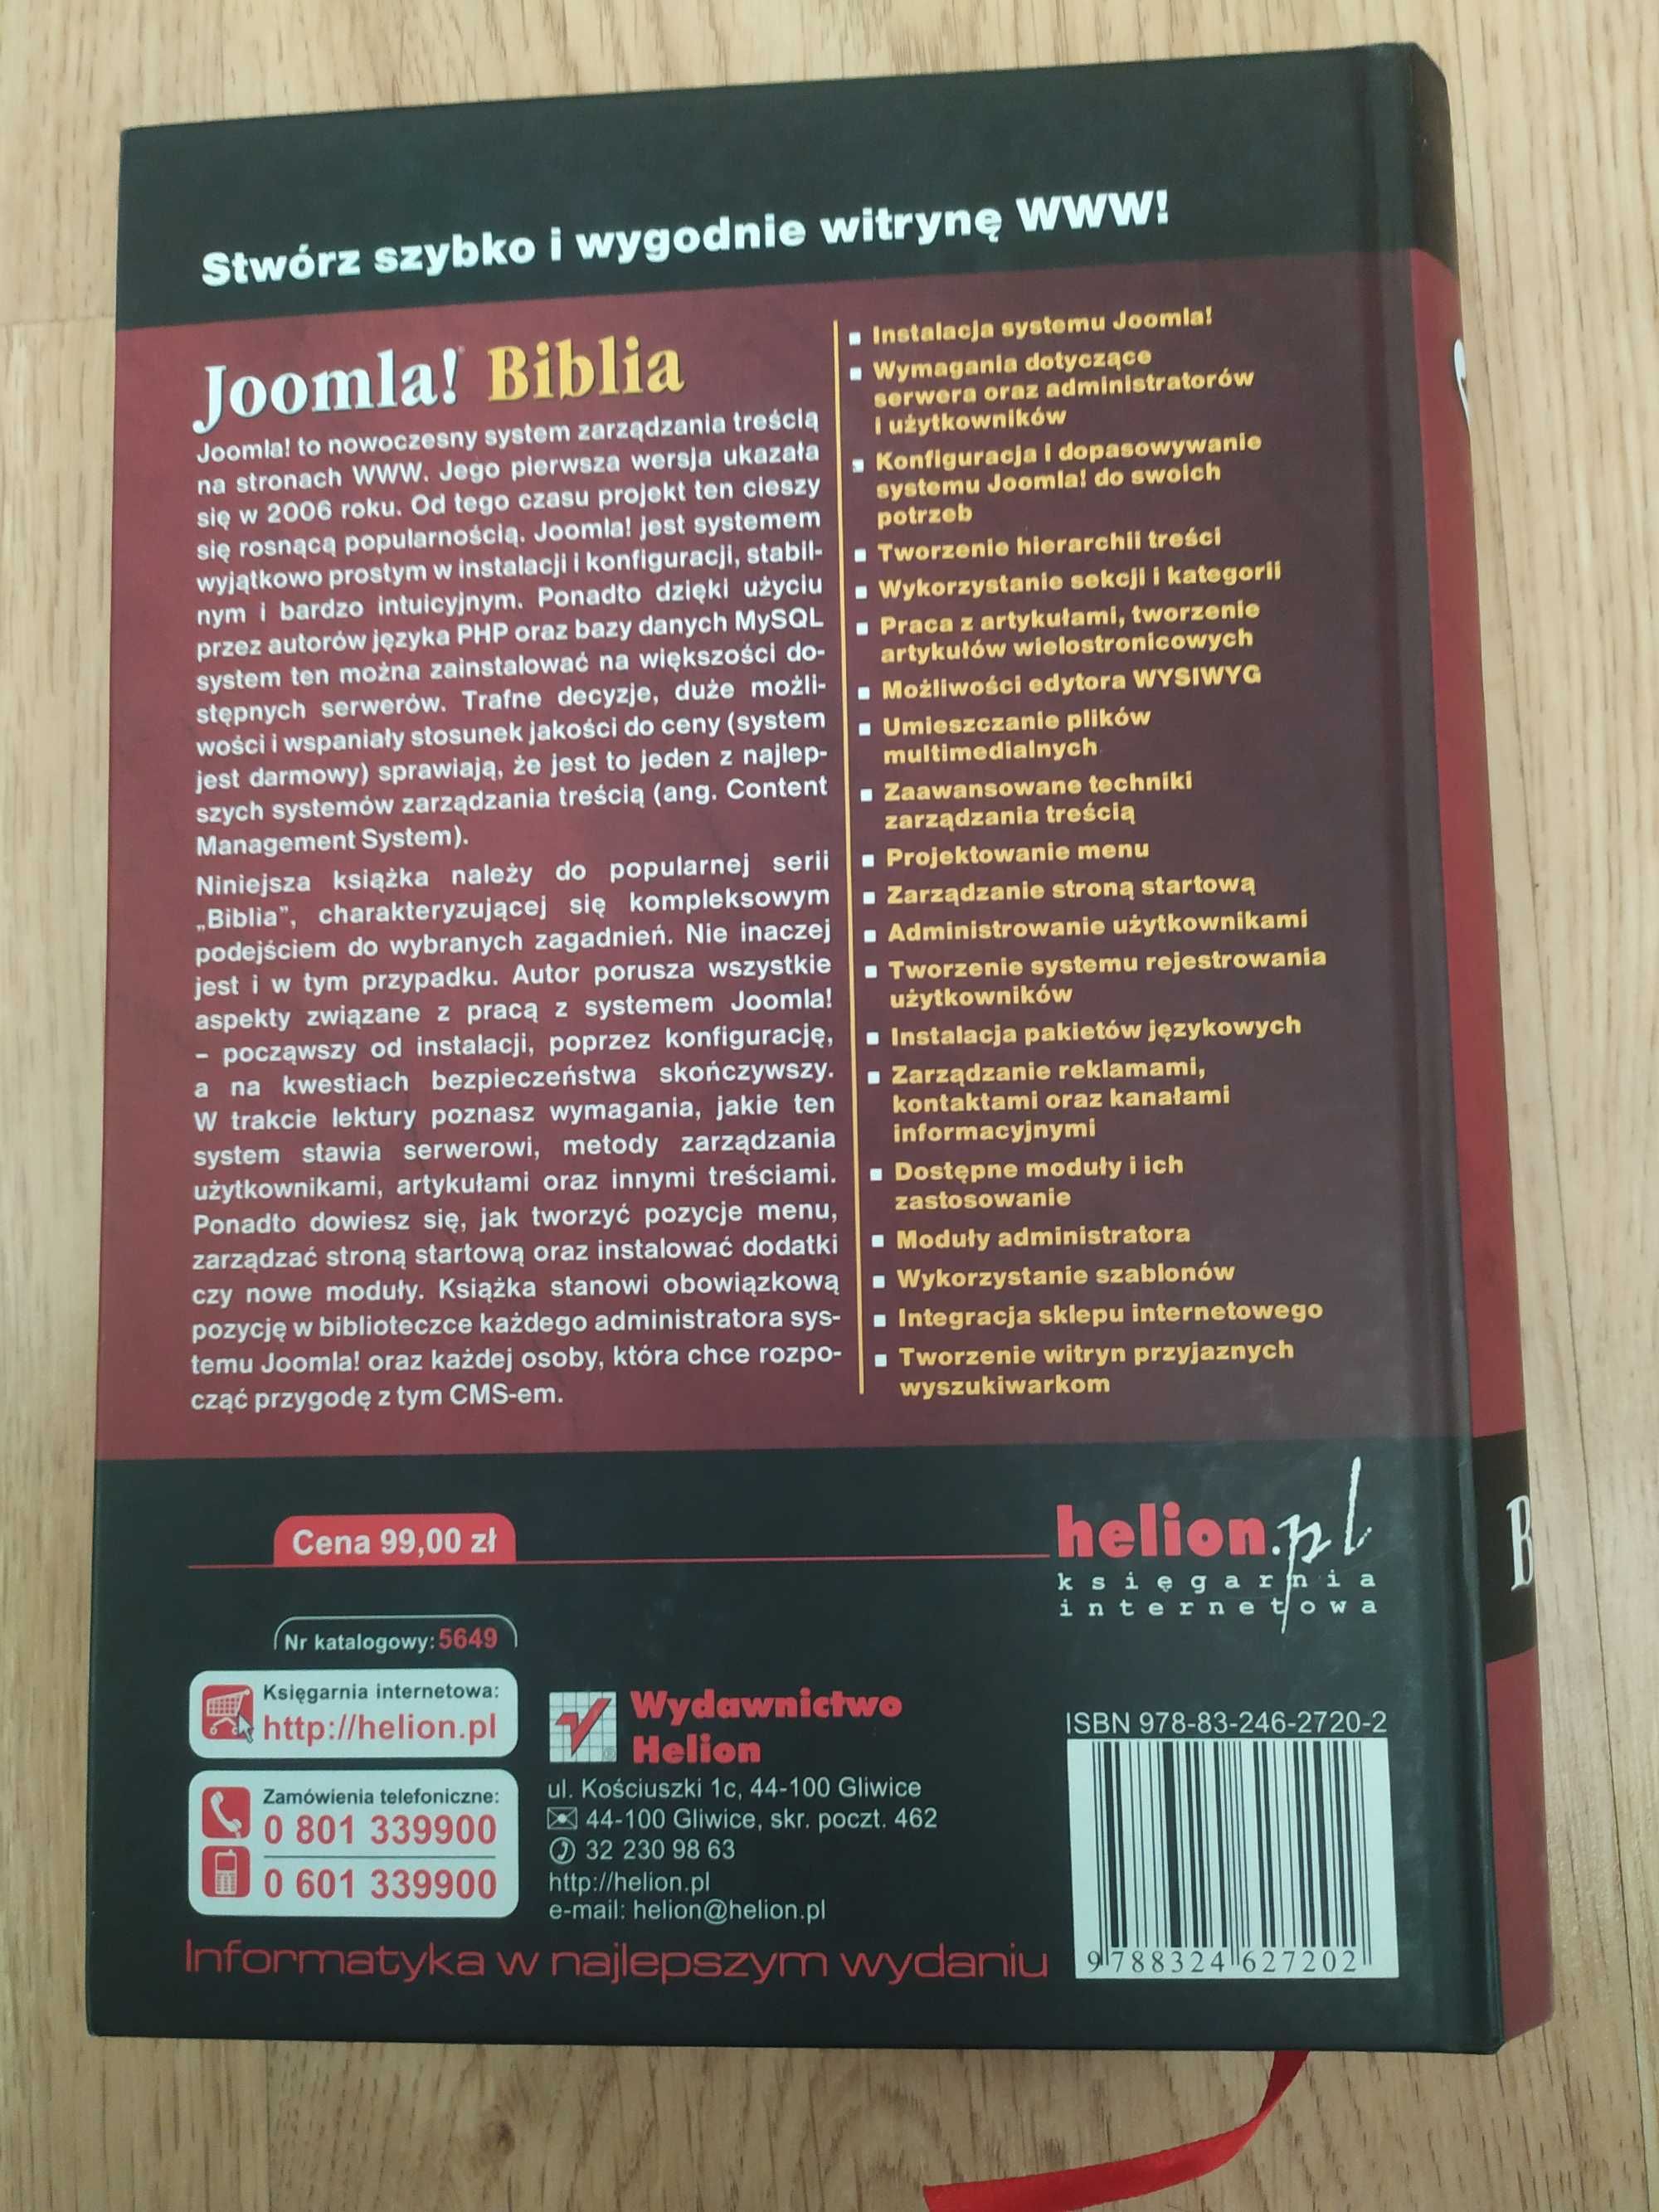 Joomla! Biblia programowanie HELION